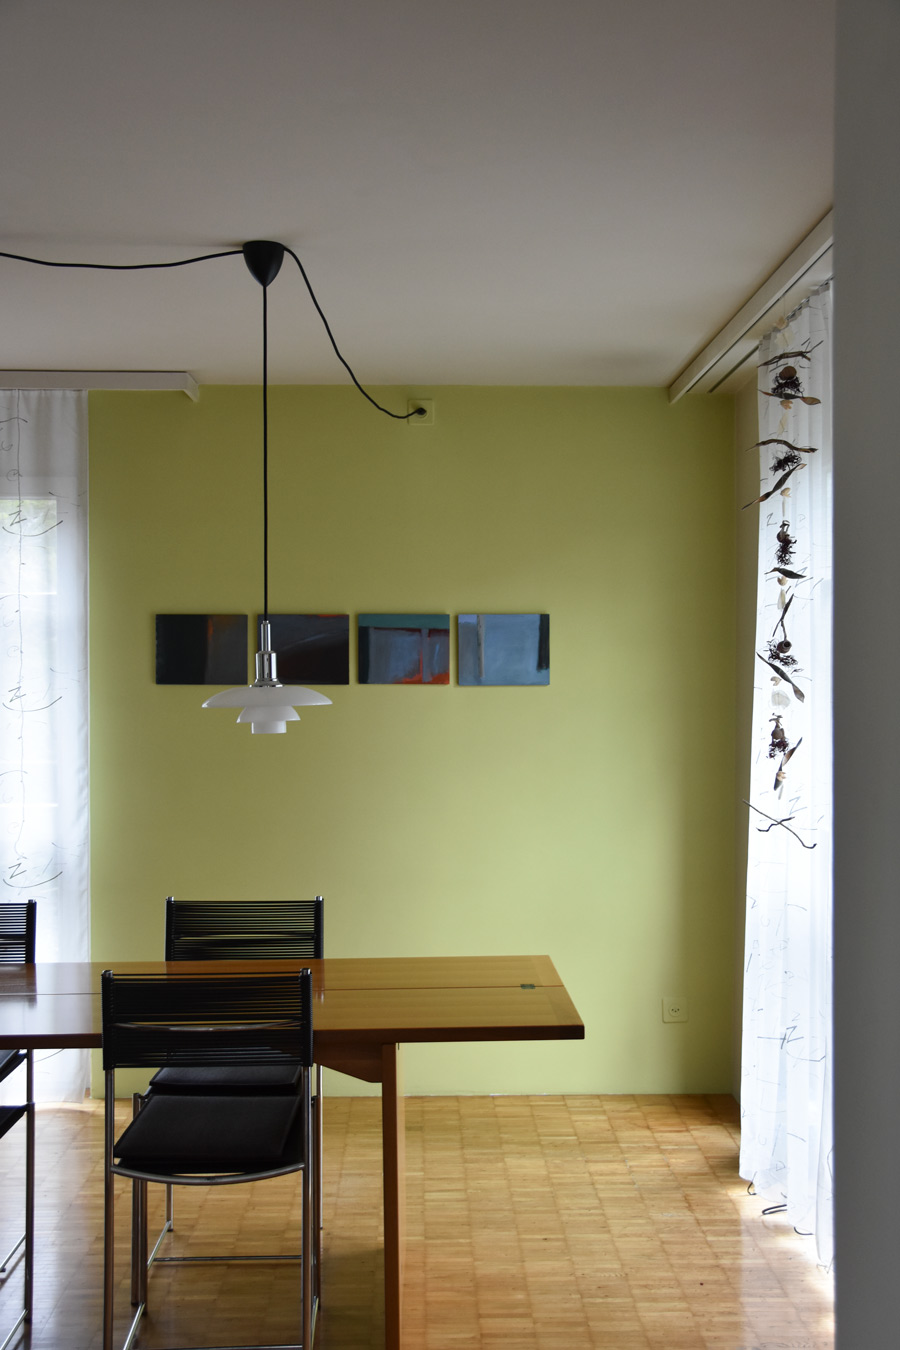 Farbgestaltung + Feng Shui im Innenraum: Das Bild zeigt einen Ausschnitt des Esszimmers im Erdgeschoss, in frühlingshaftem Grün.